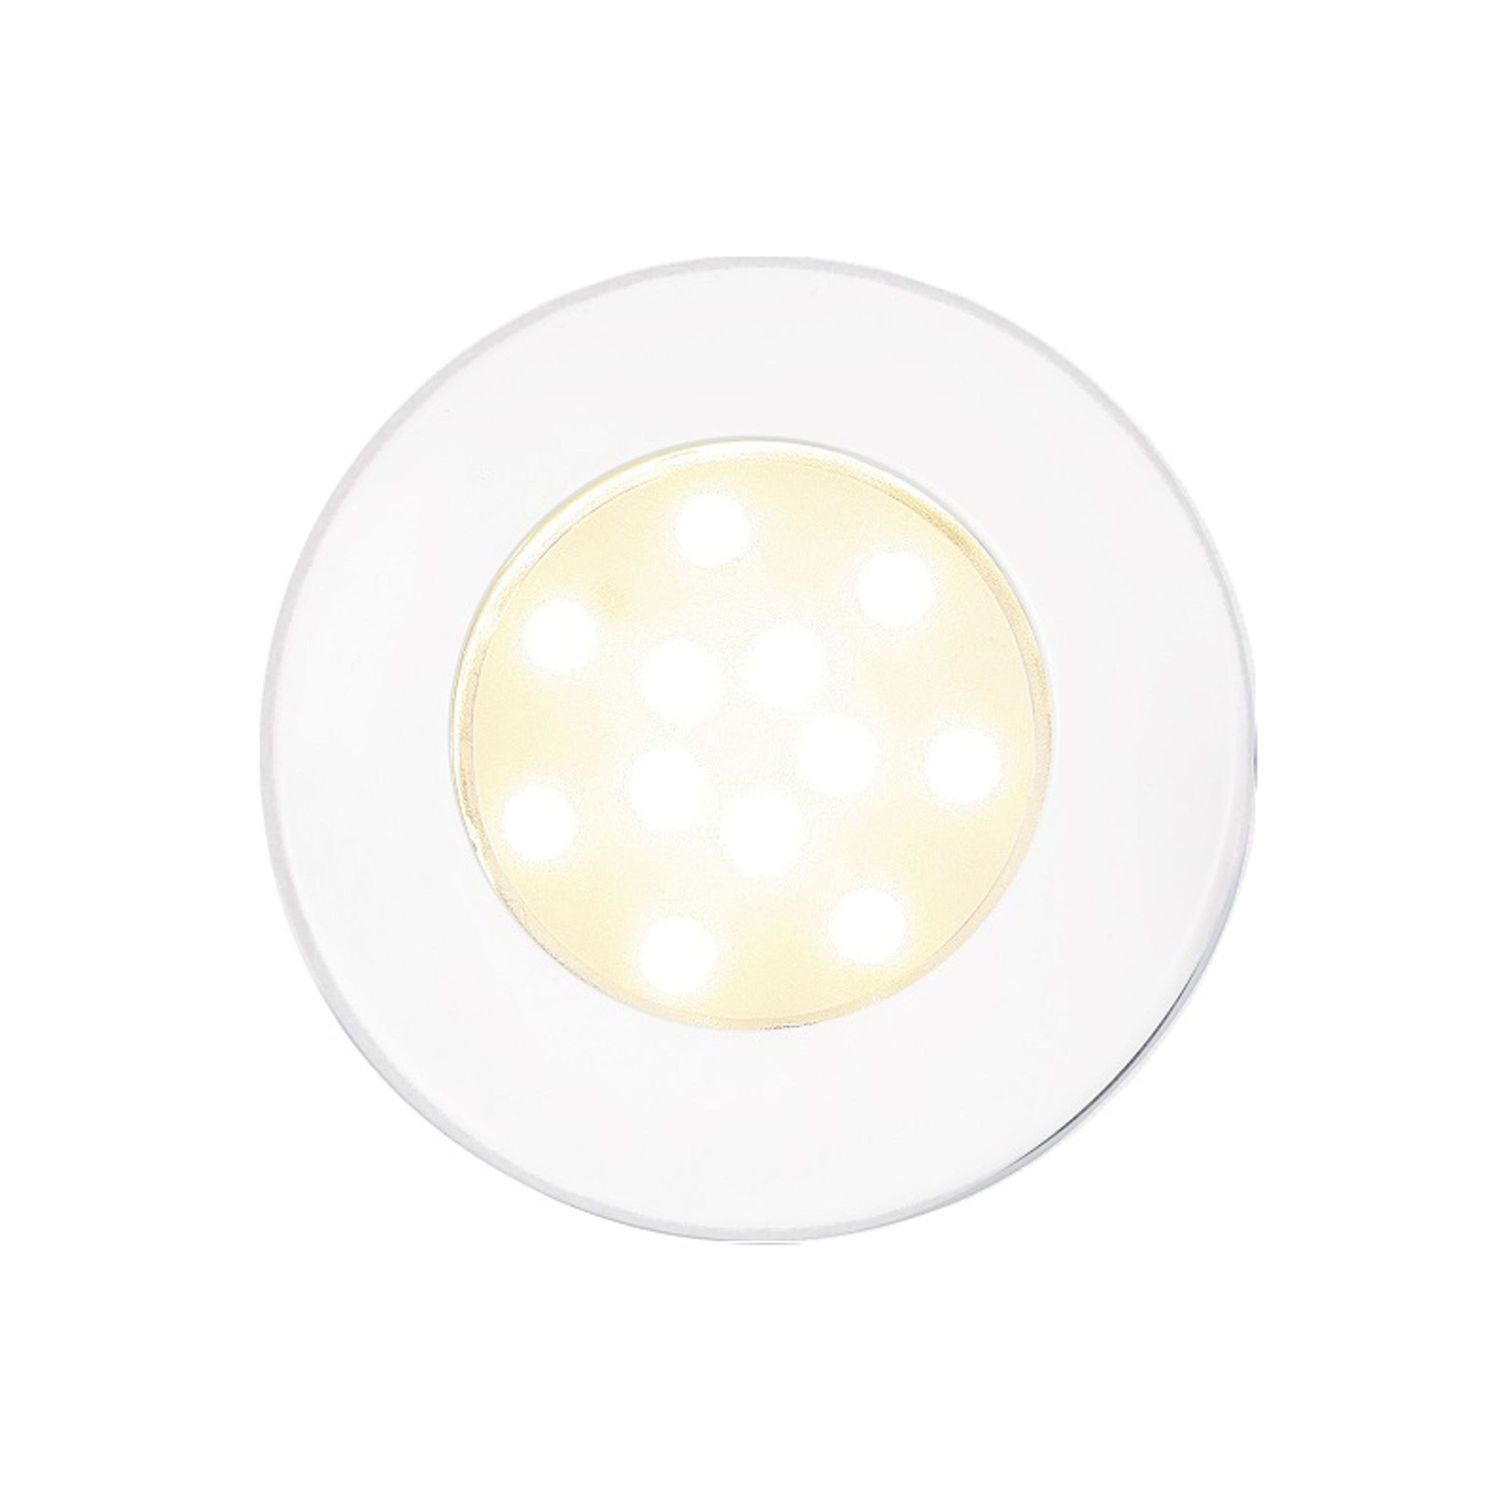 Corona SMD LED, Vit ip65